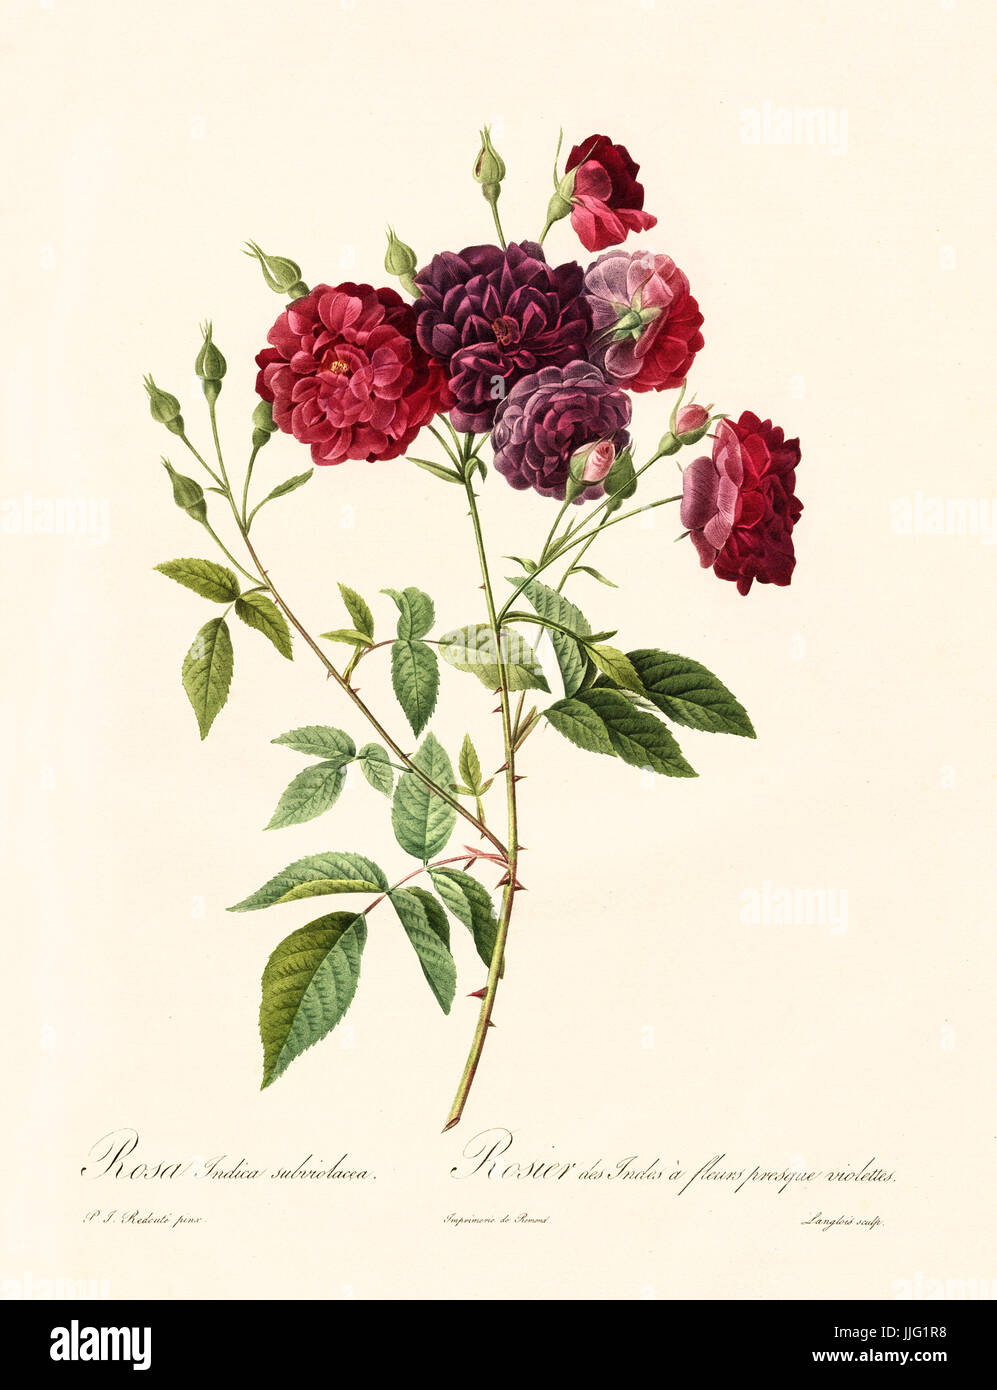 Vecchia illustrazione di rosa indica subviolacea. Creato da P. R. Redoute, pubblicato su Les Roses, Imp. Firmin Didot, Parigi, 1817-24 Foto Stock